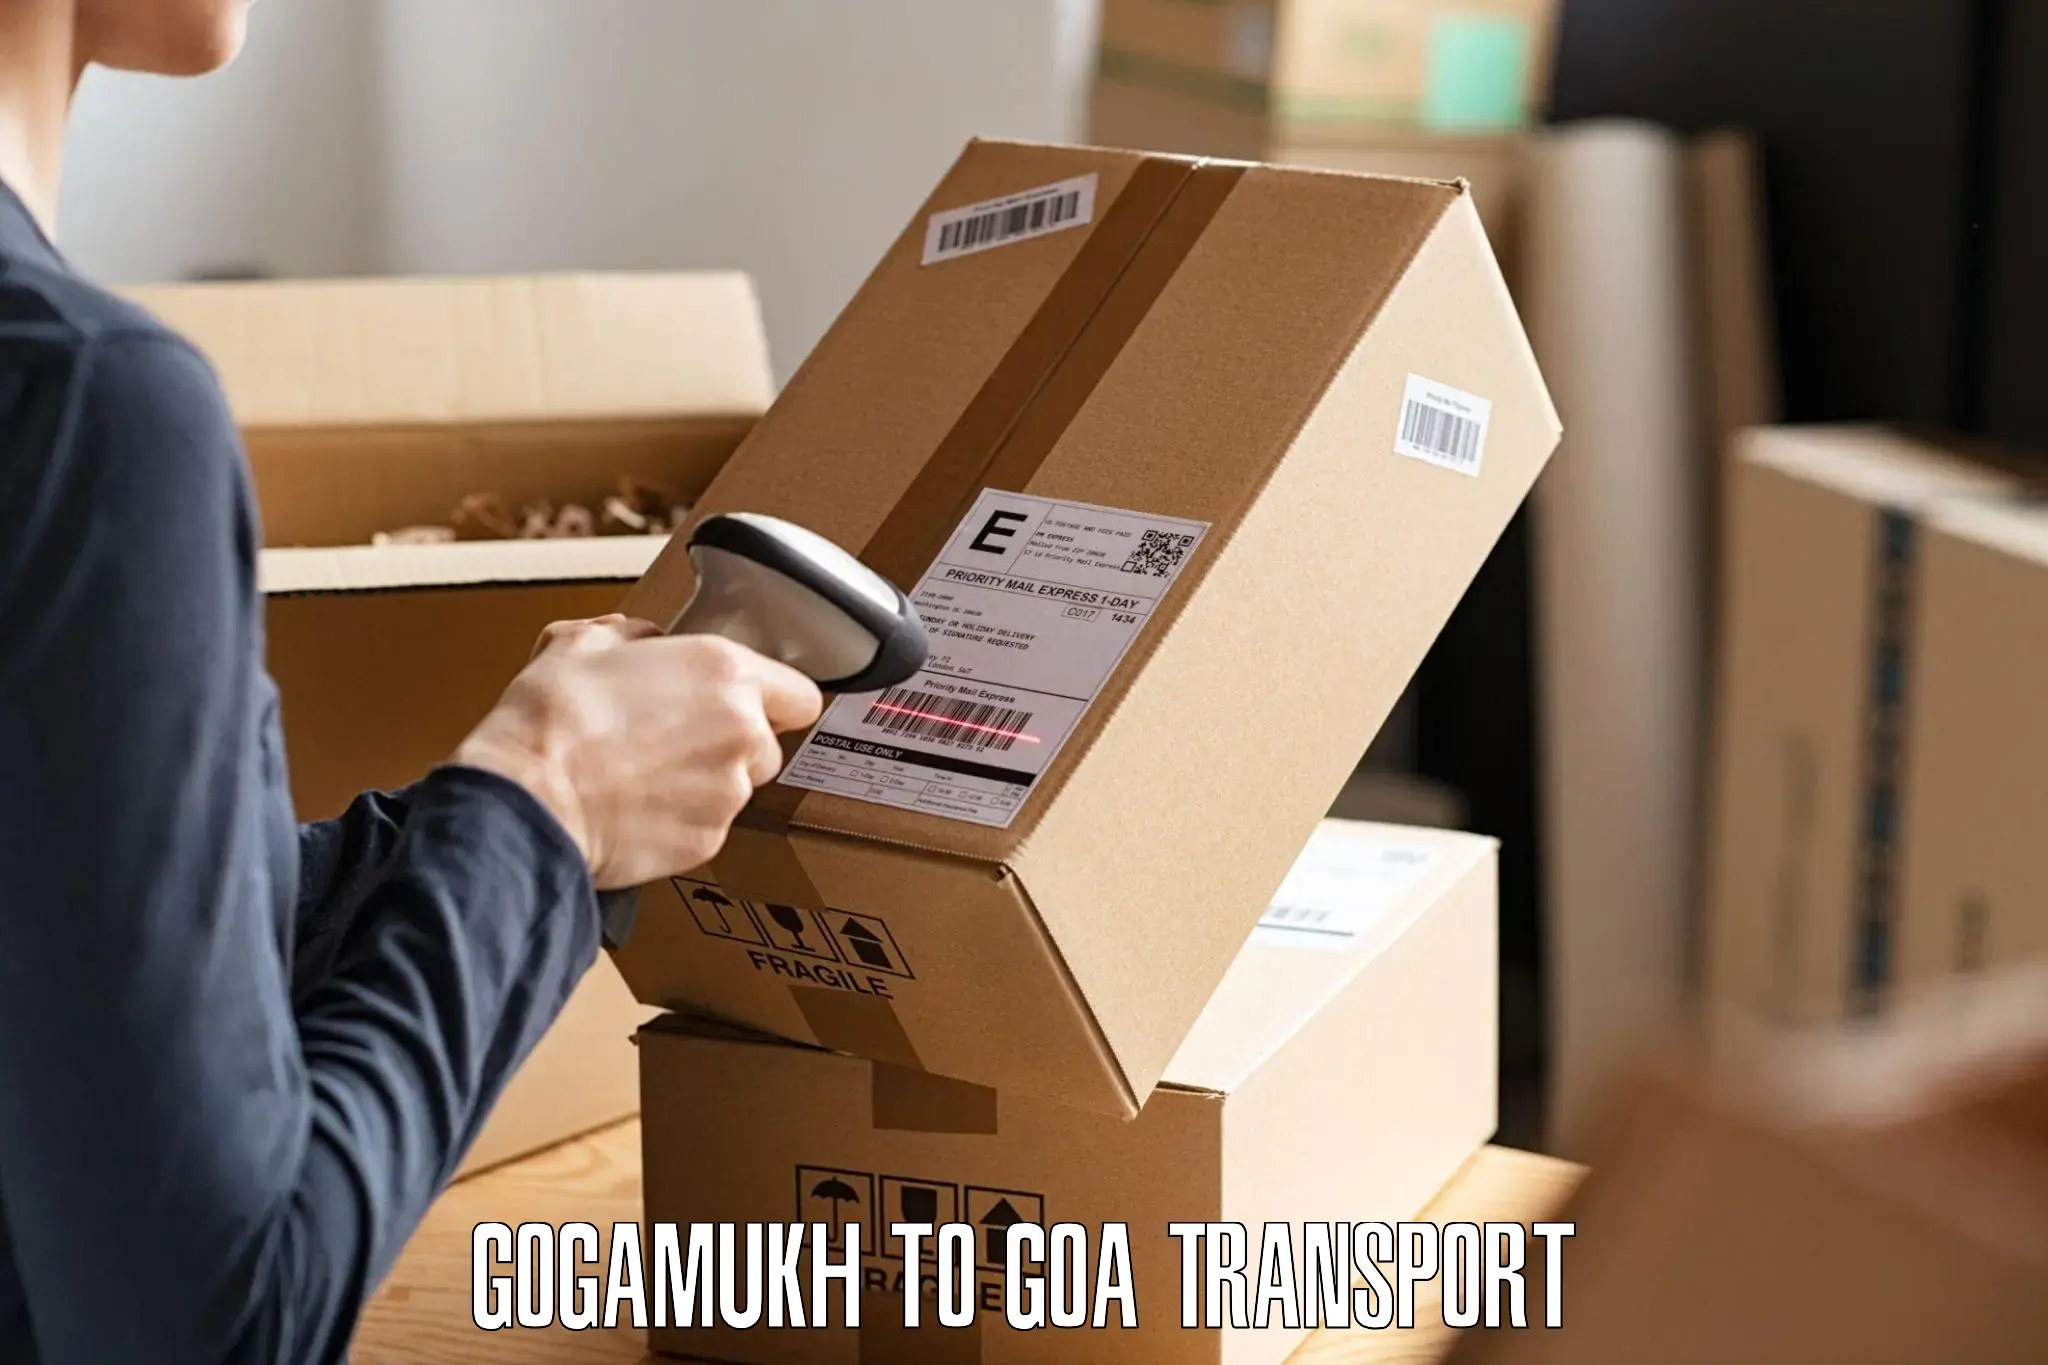 Cargo transportation services Gogamukh to Bardez